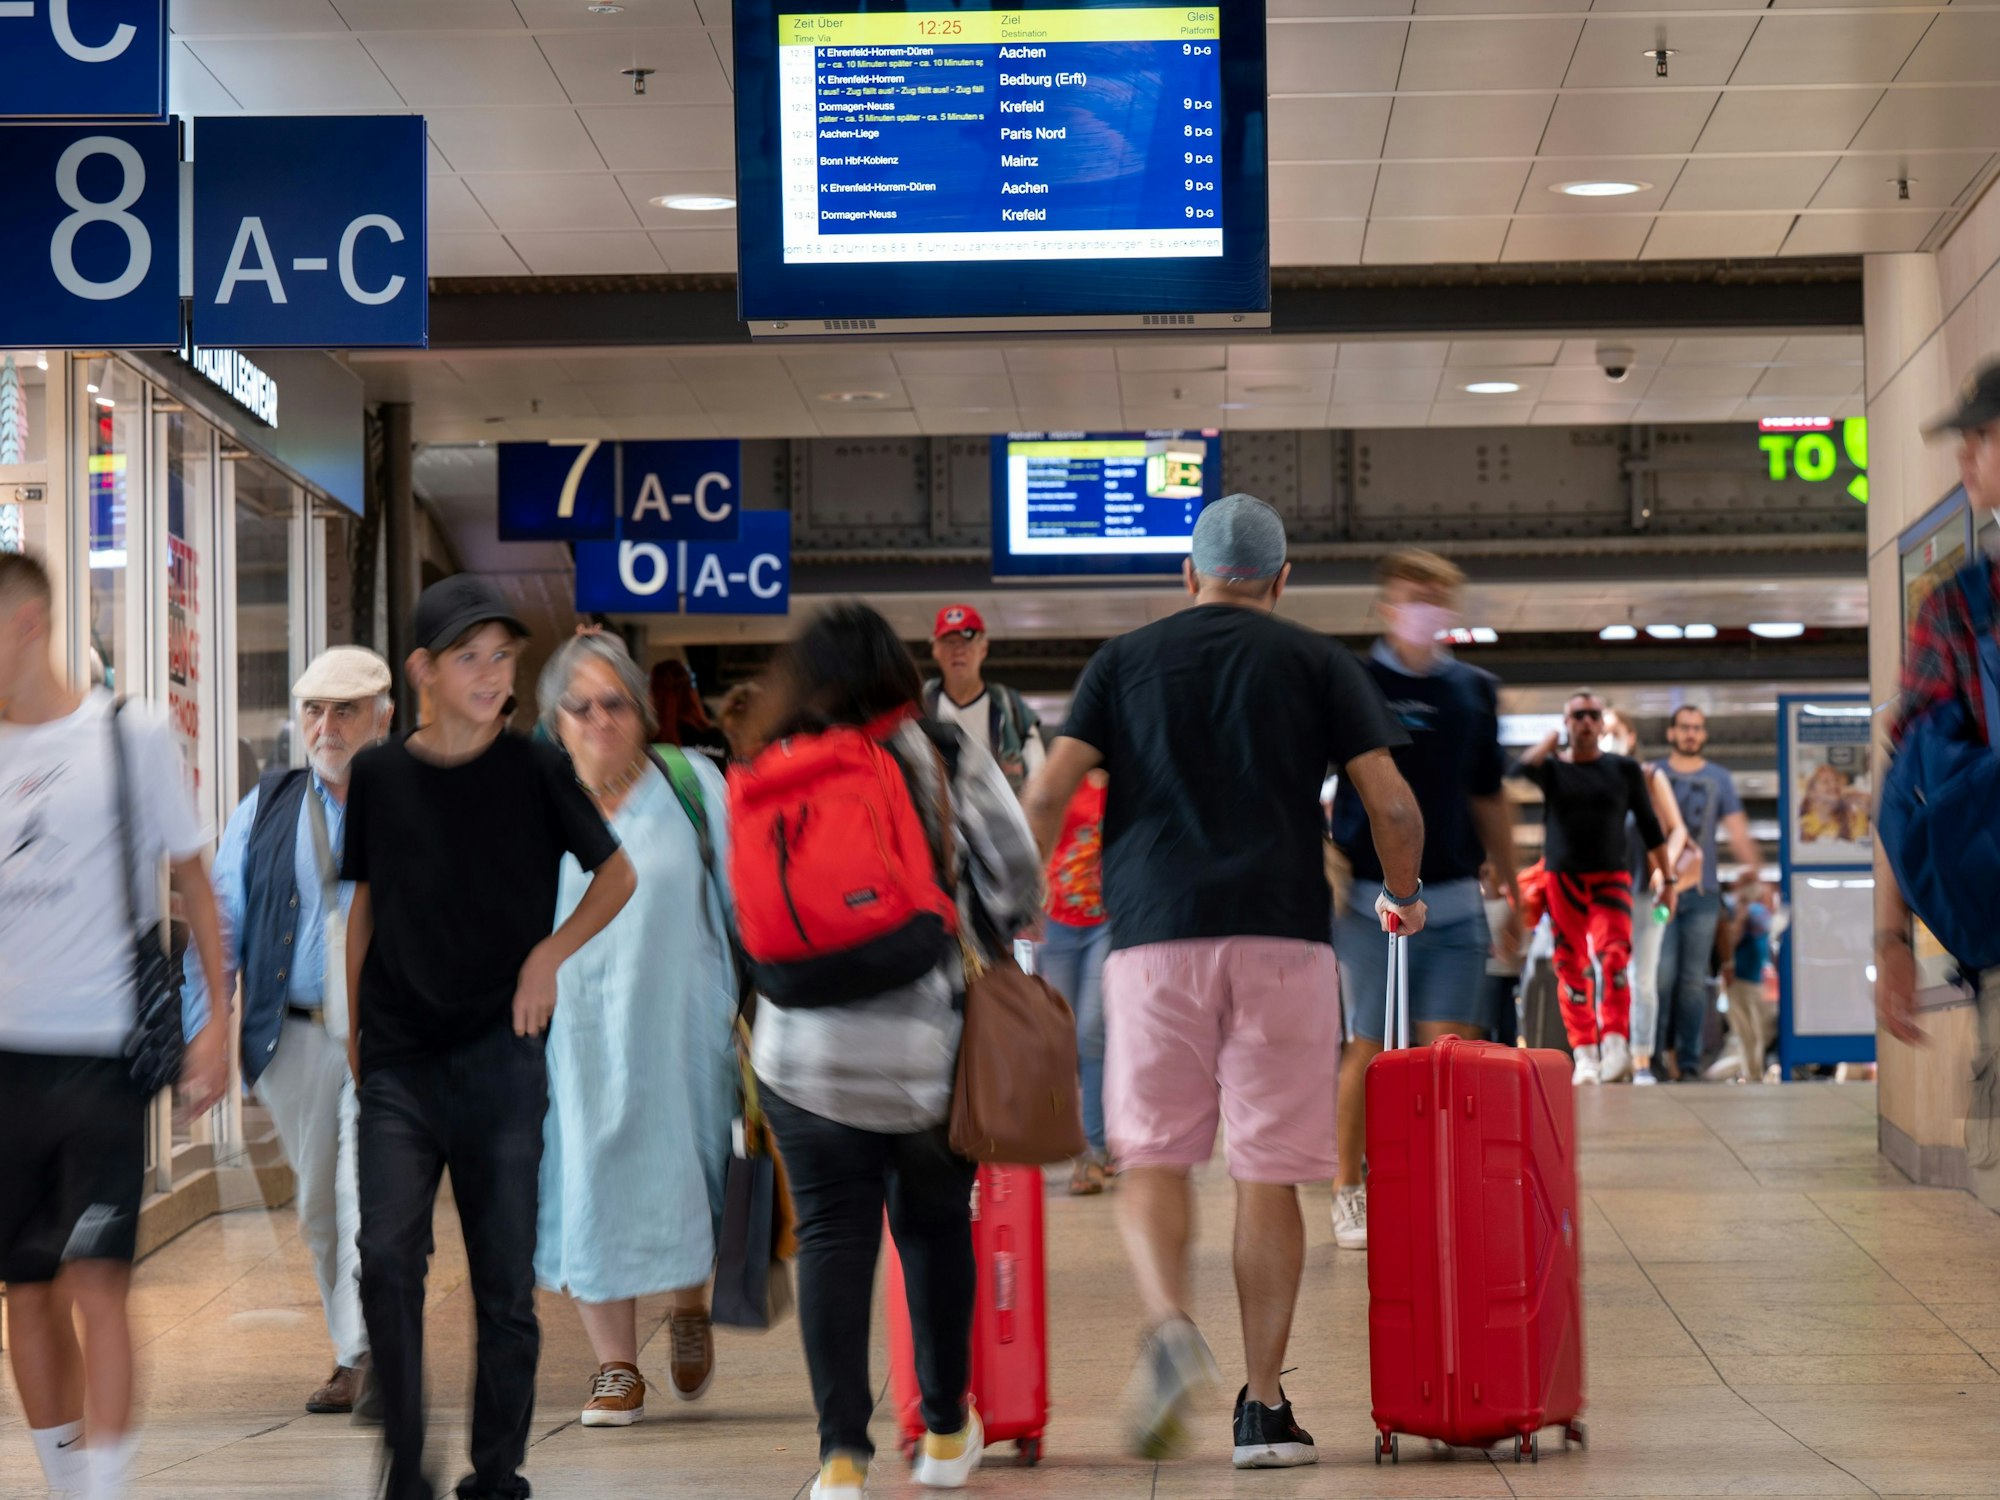 Reisende suchen nach Informationen auf den Anzeigetafeln im Hauptbahnhof